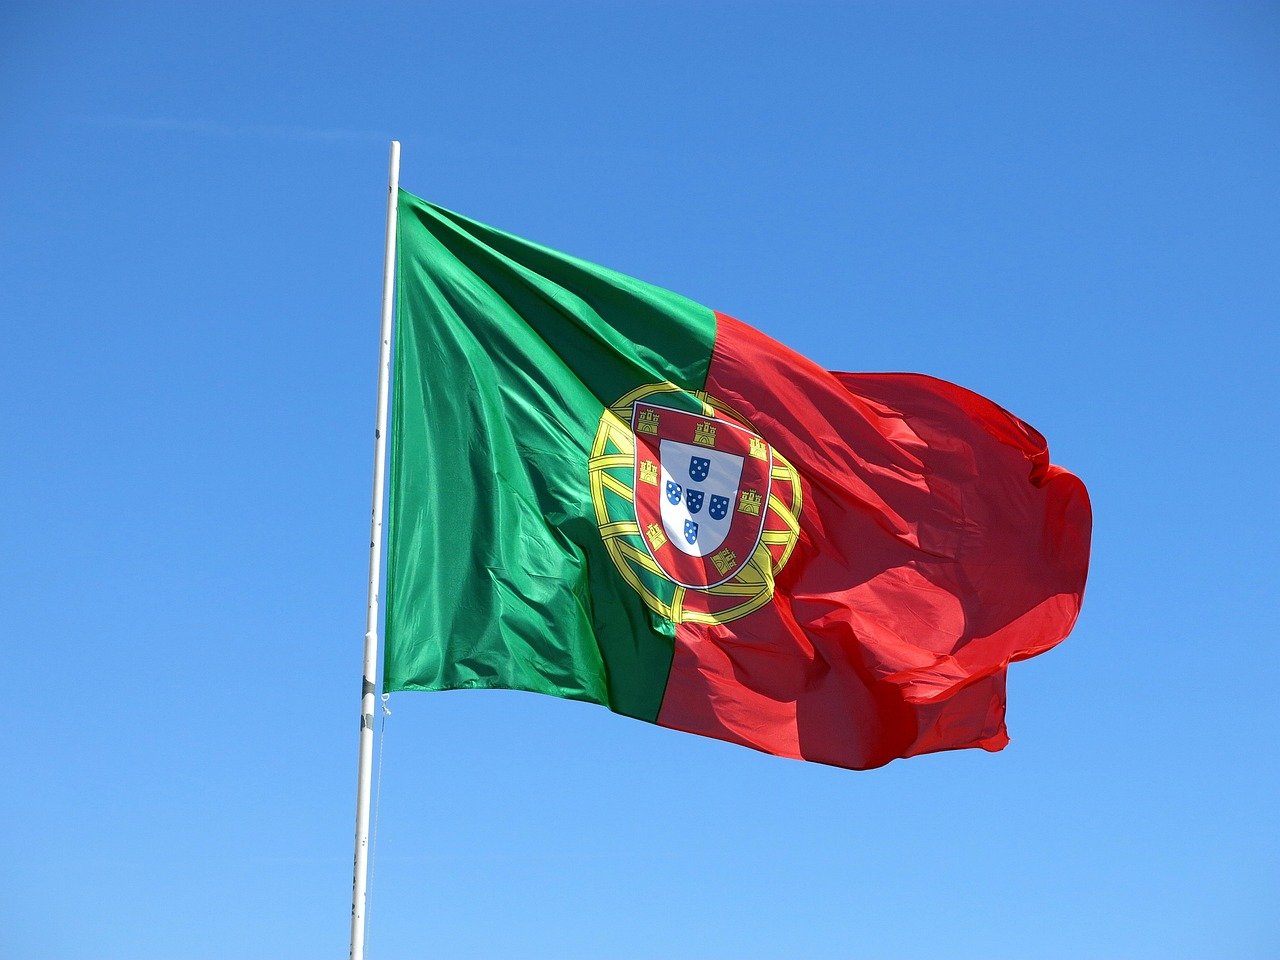 Auswandern nach Portugal – worauf du achten musst